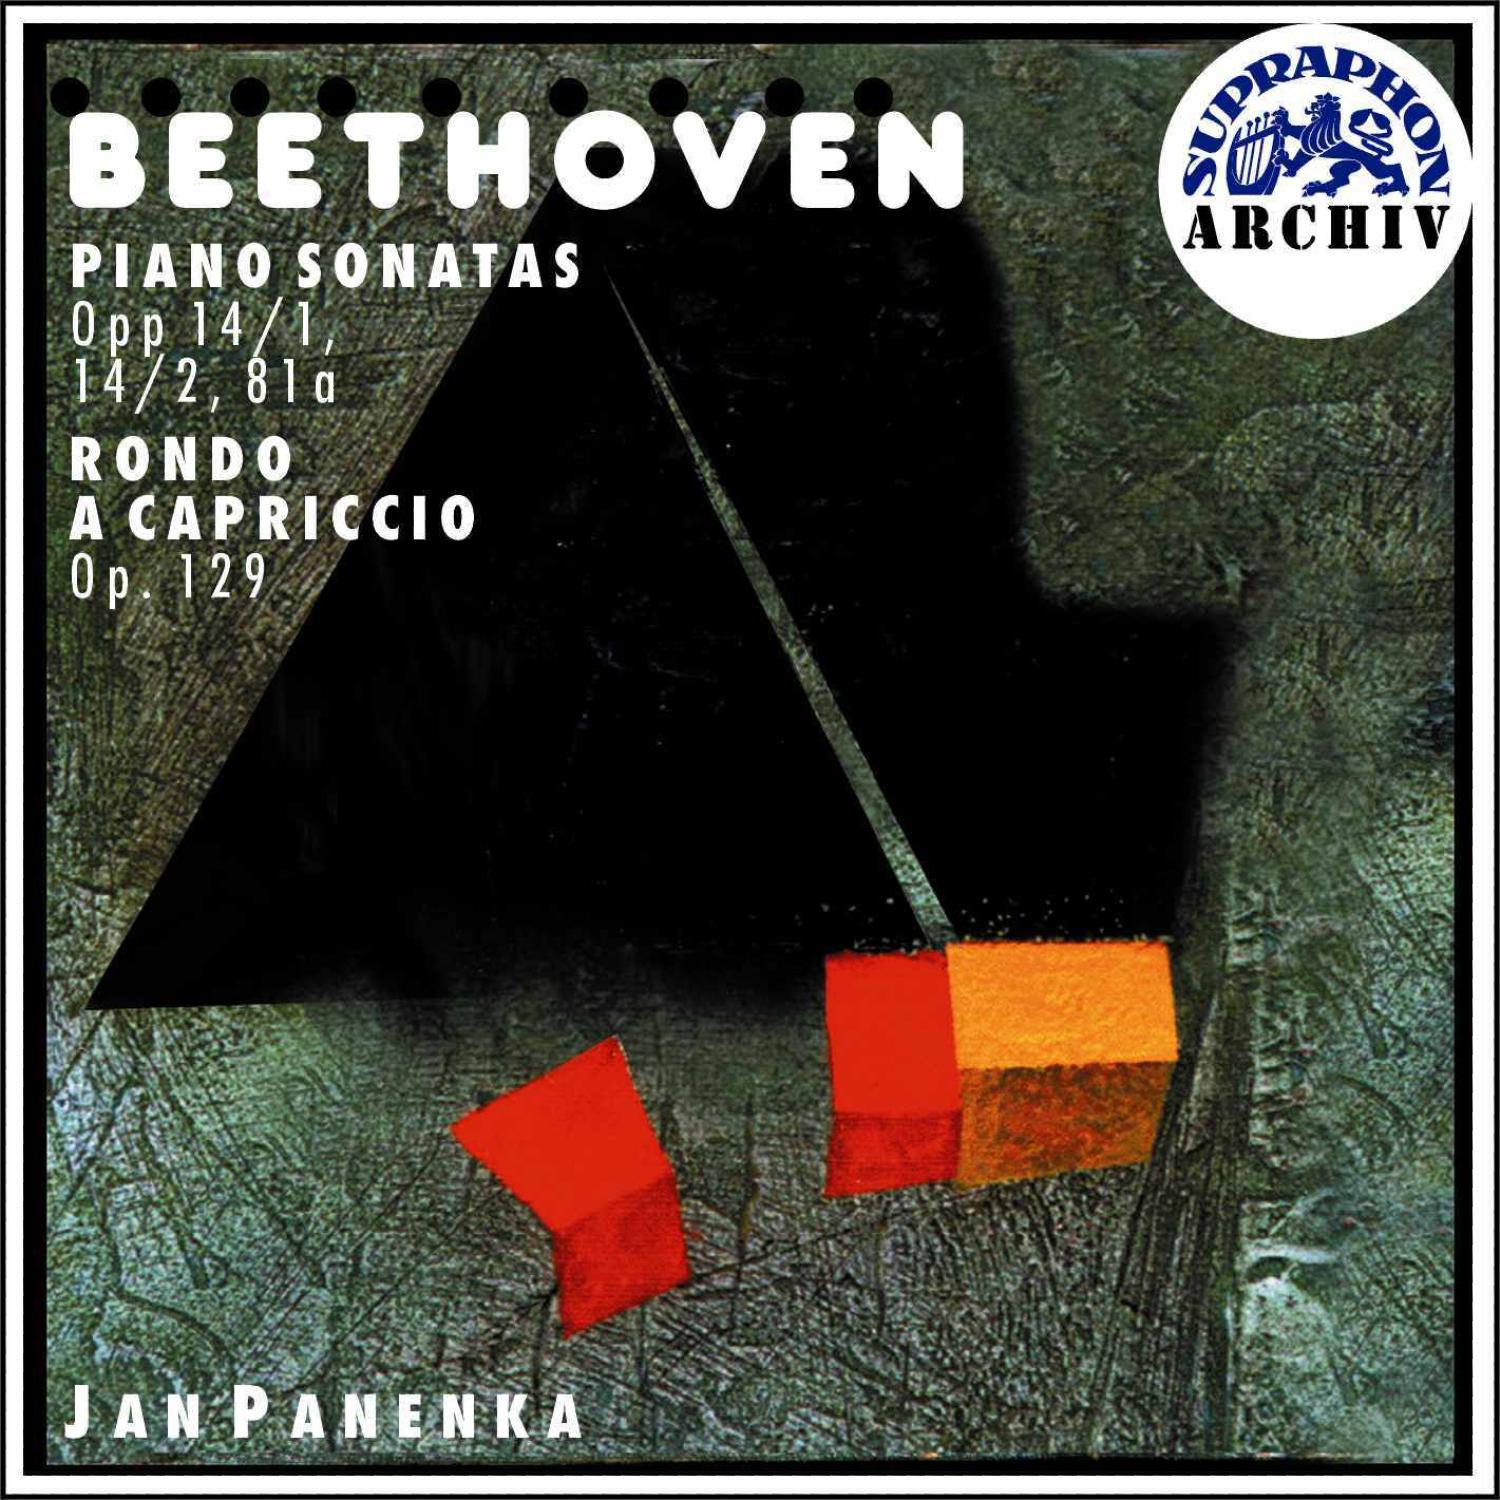 Beethoven: Piano Sonatas No. 1, 2, Concerto, Rondo a capriccio